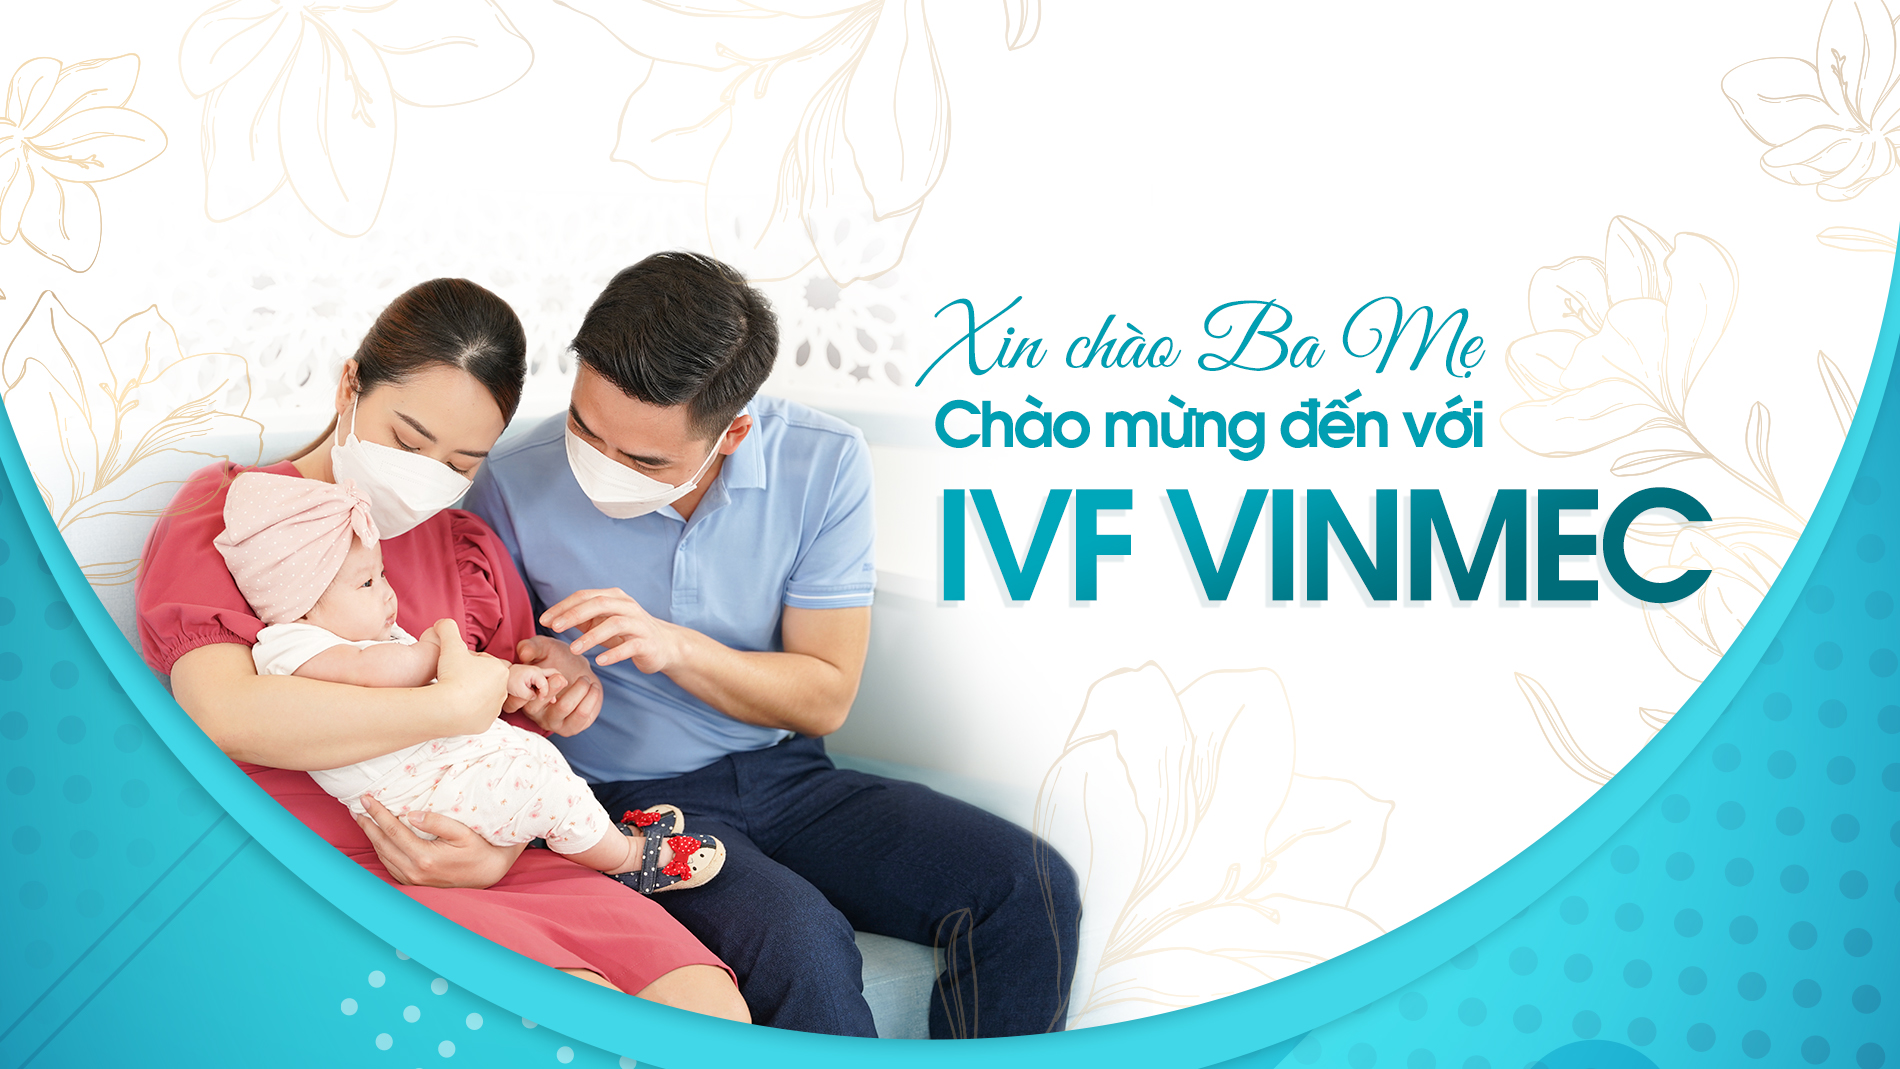 Trung tâm hỗ trợ sinh sản Vinmec - IVF Vinmec Family ảnh 1